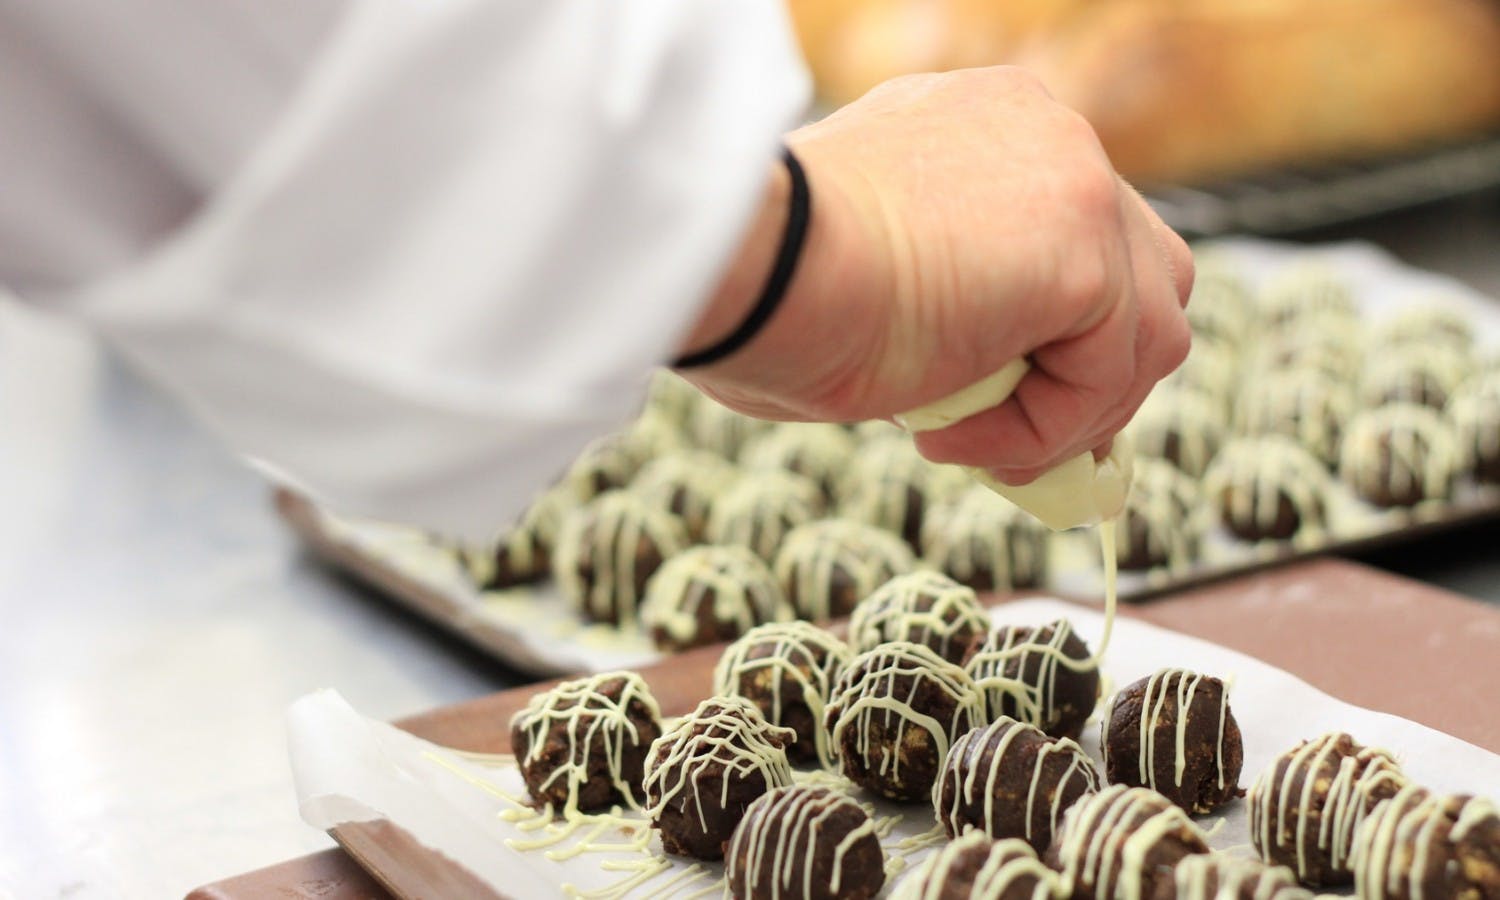 chef making chocolate truffles.jpg